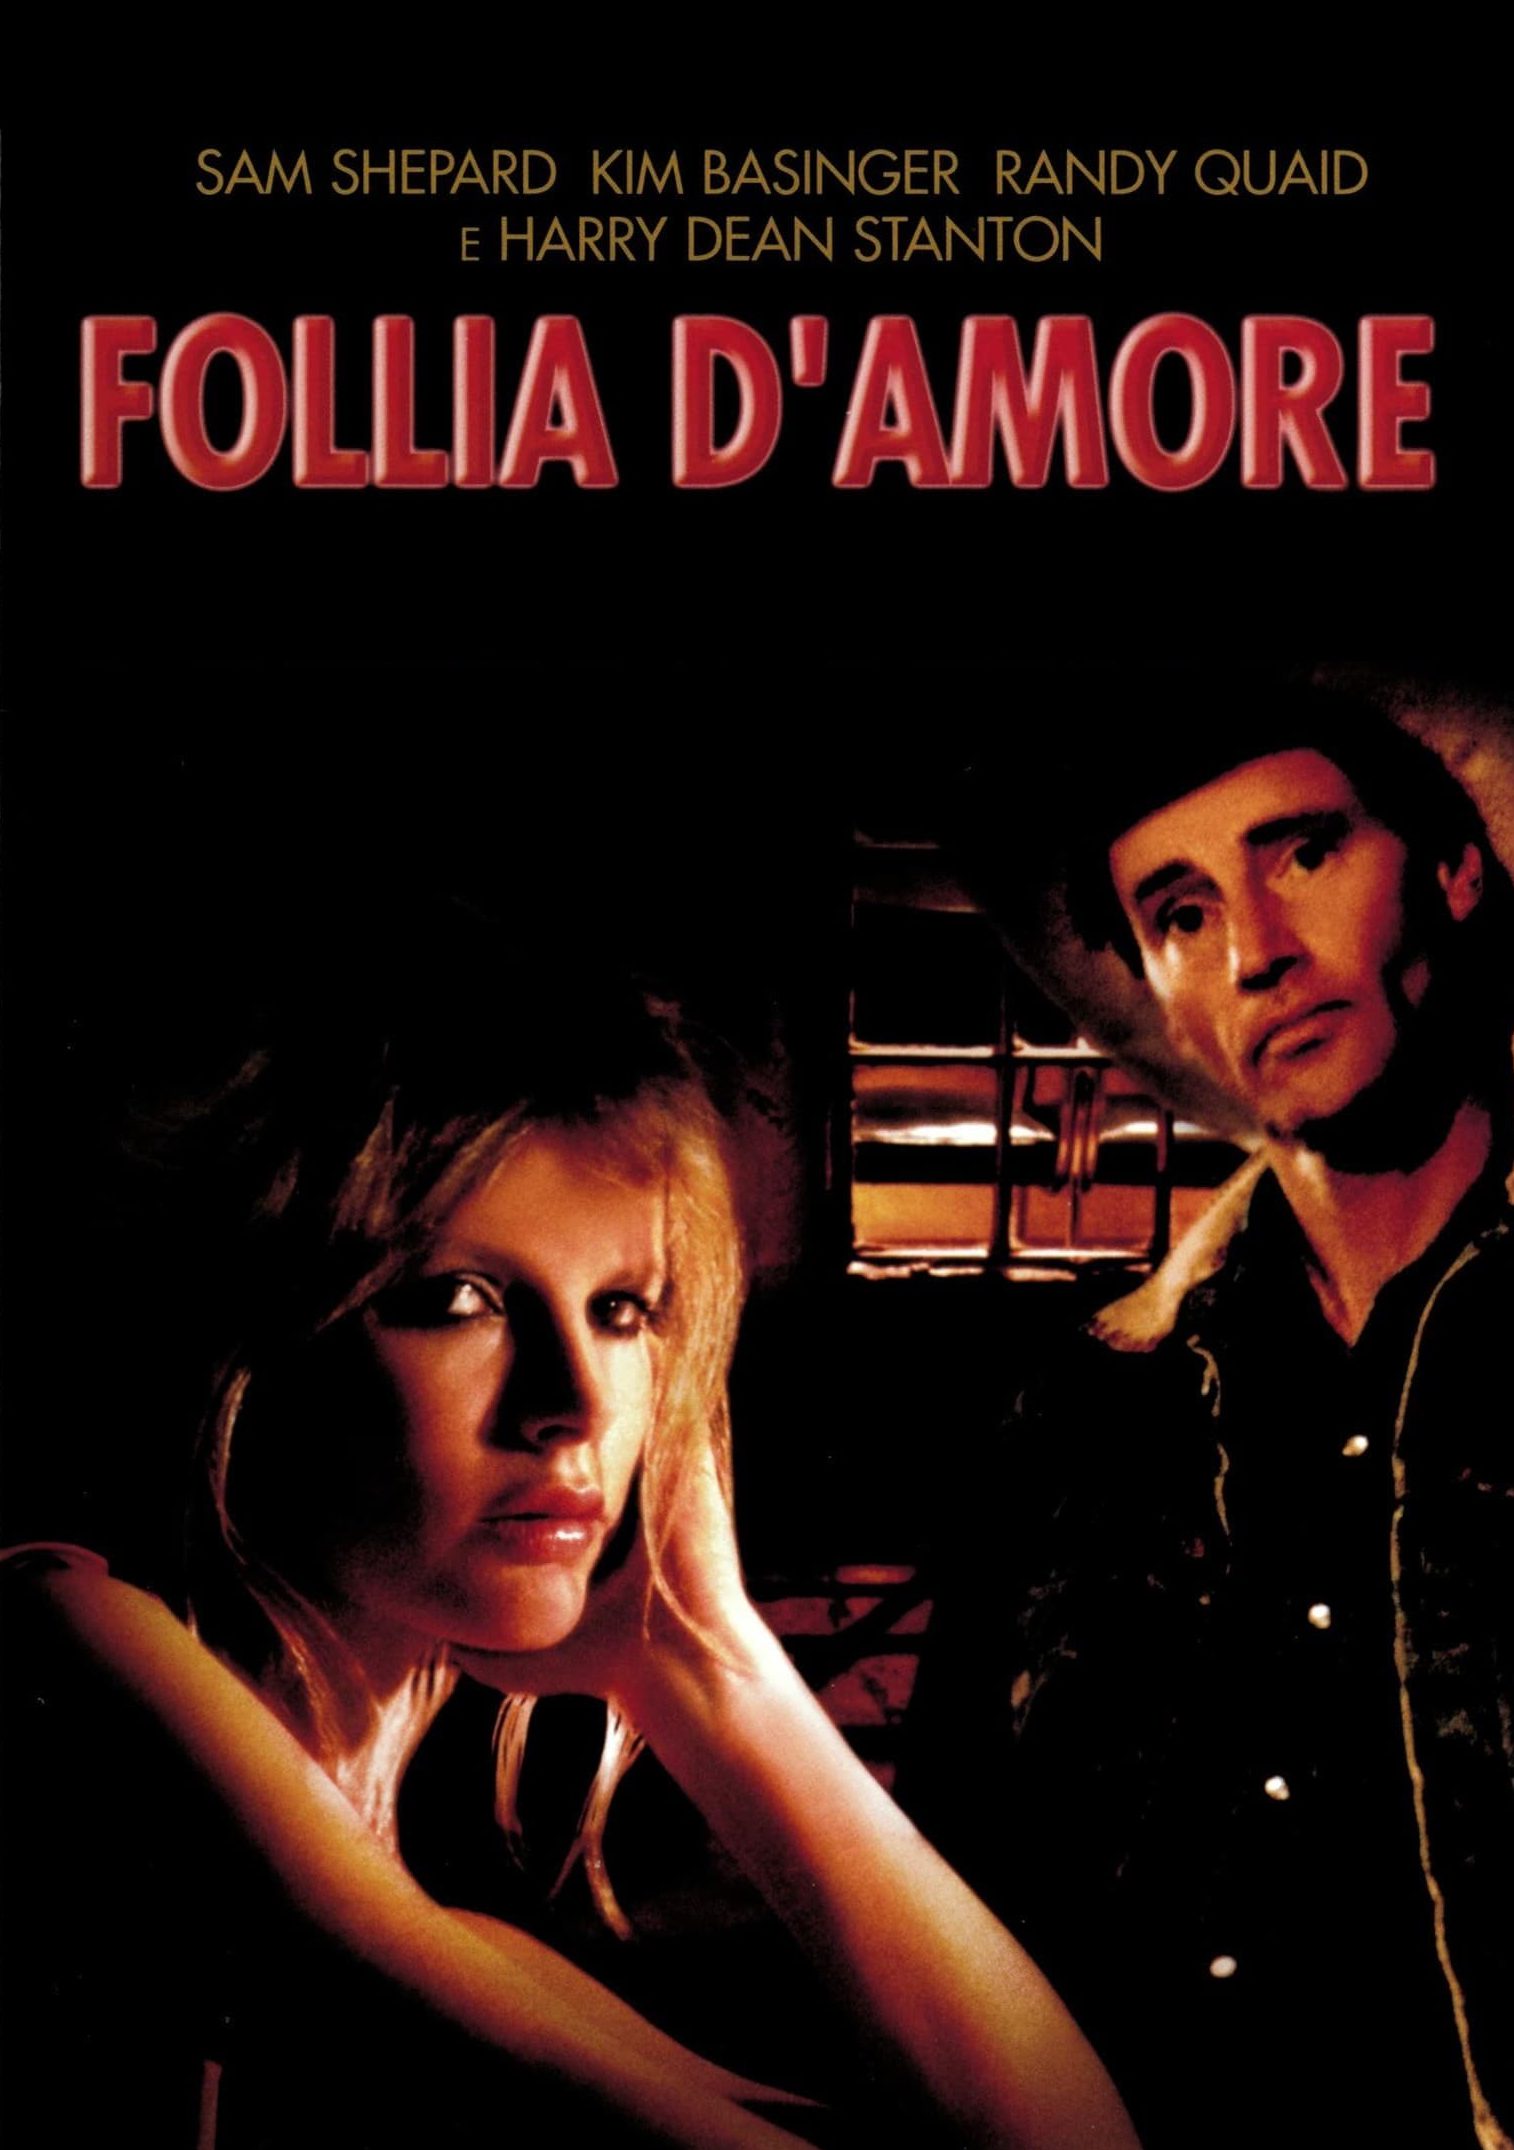 Follia d’amore (1985)